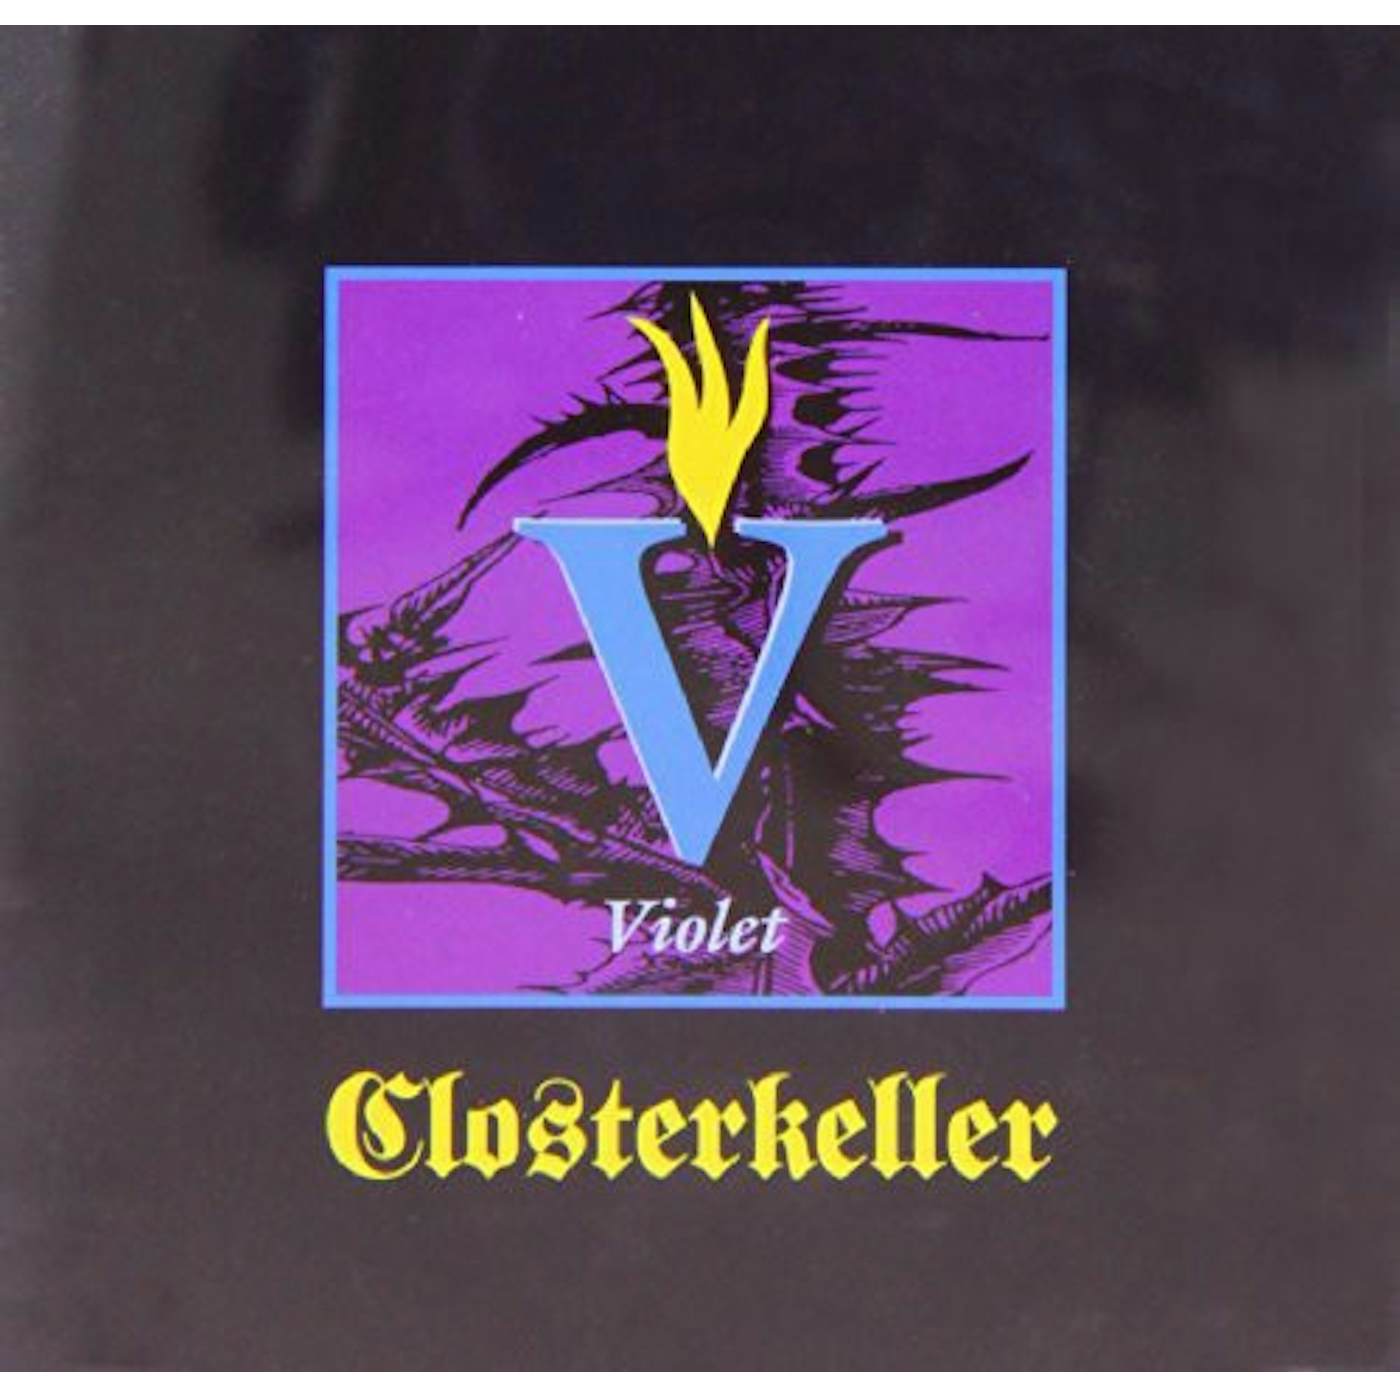 Closterkeller VIOLET CD